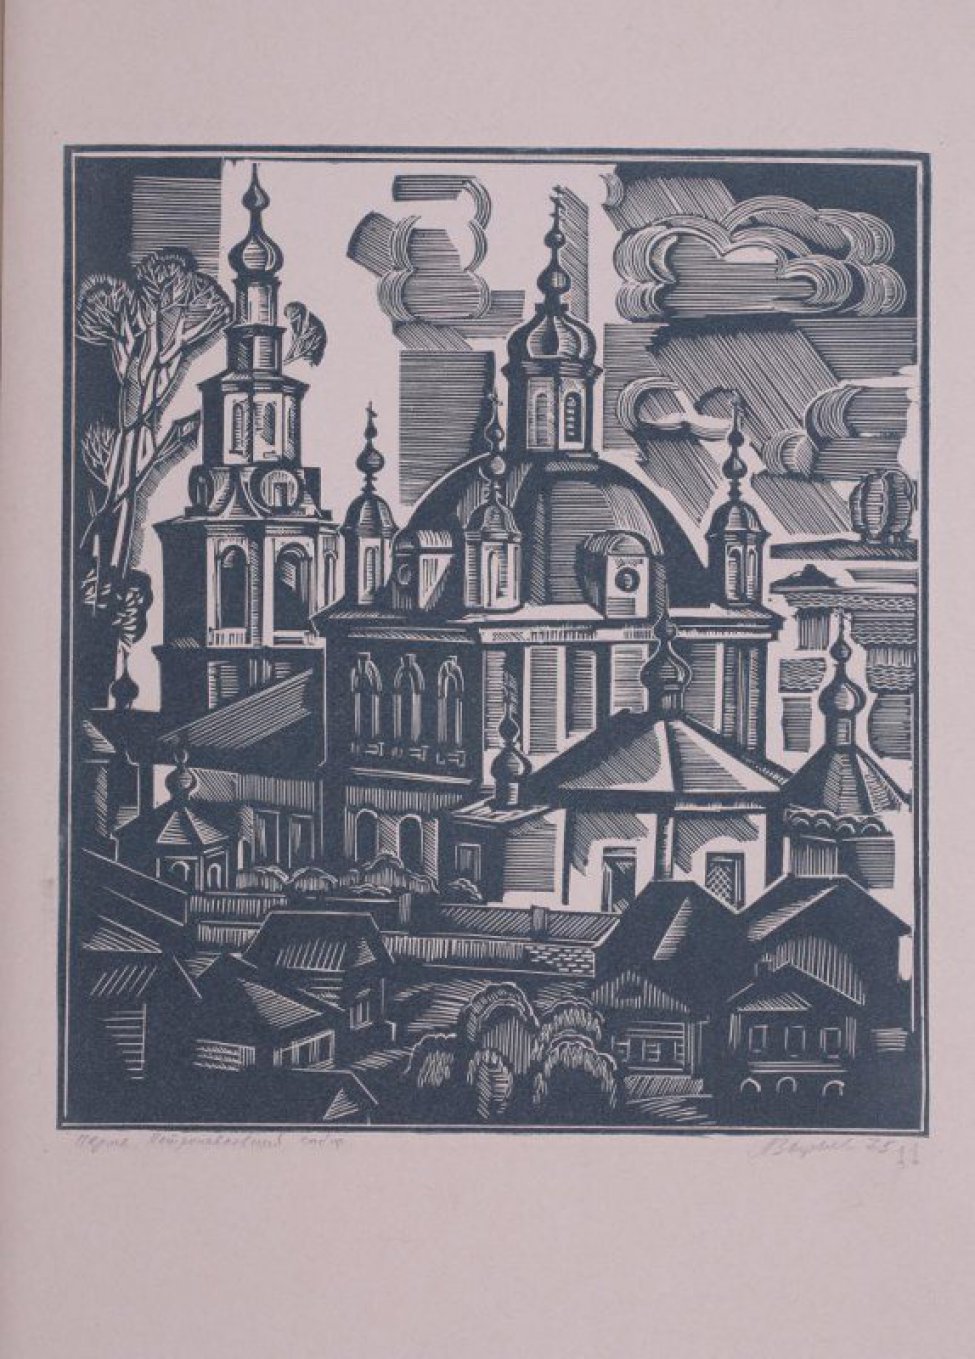 Изображен пятиглавый каменный собор с  колокольней, перед которым стоят деревянные одноэтажные дома и небольшие часовни.